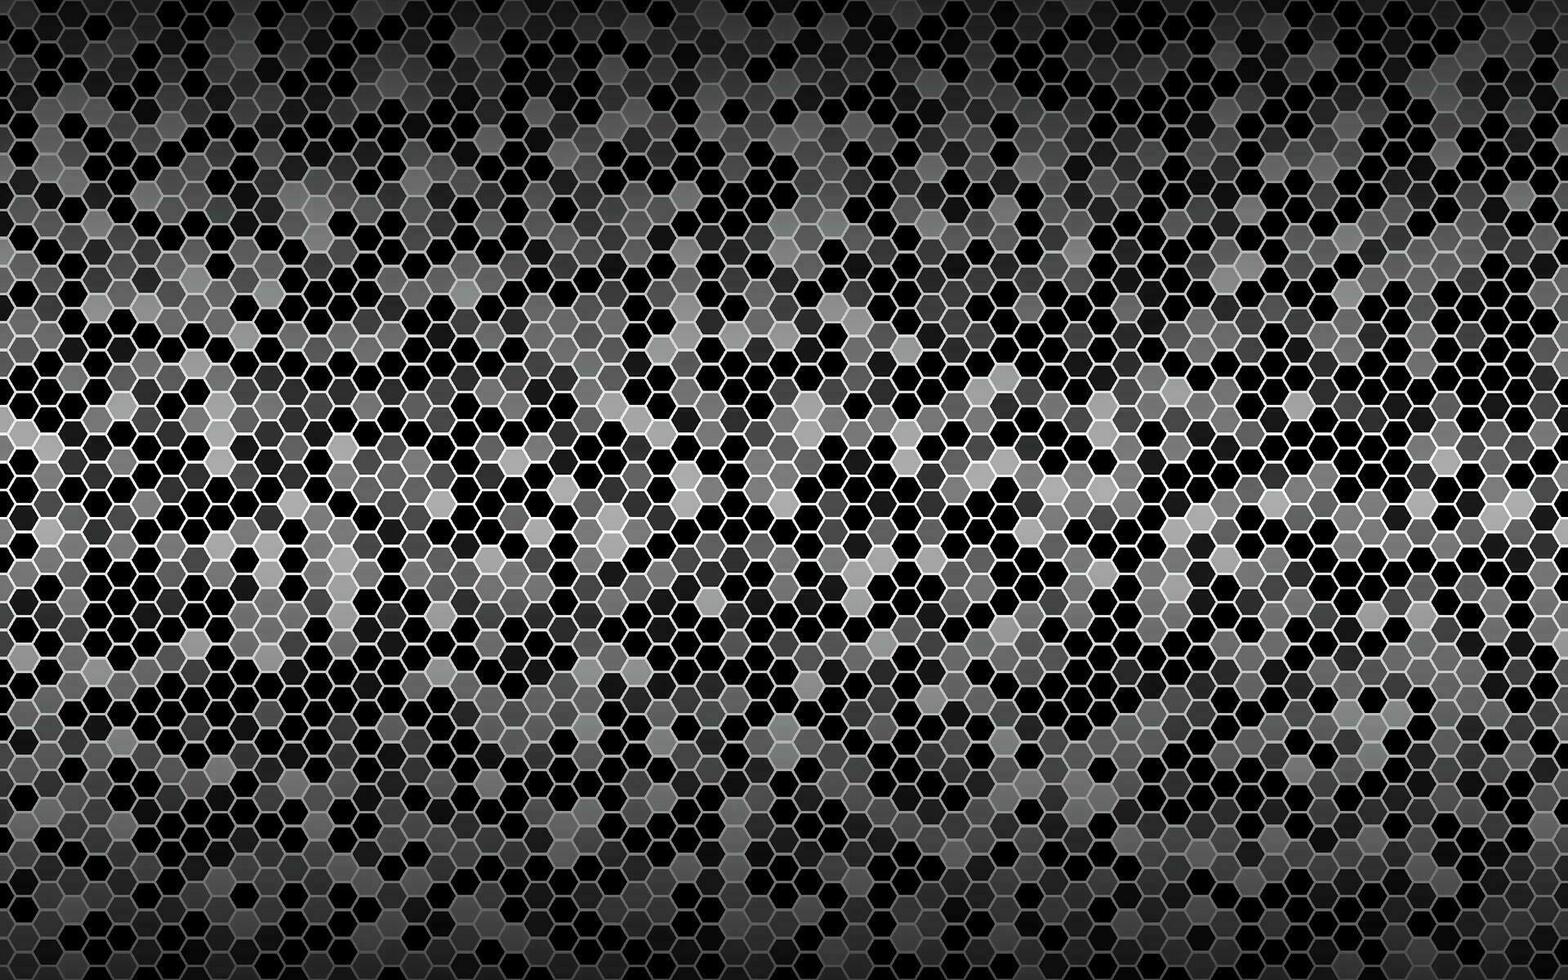 sfondo vettoriale in bianco e nero con maglia esagonale. moderna struttura geometrica. semplice illustrazione di design